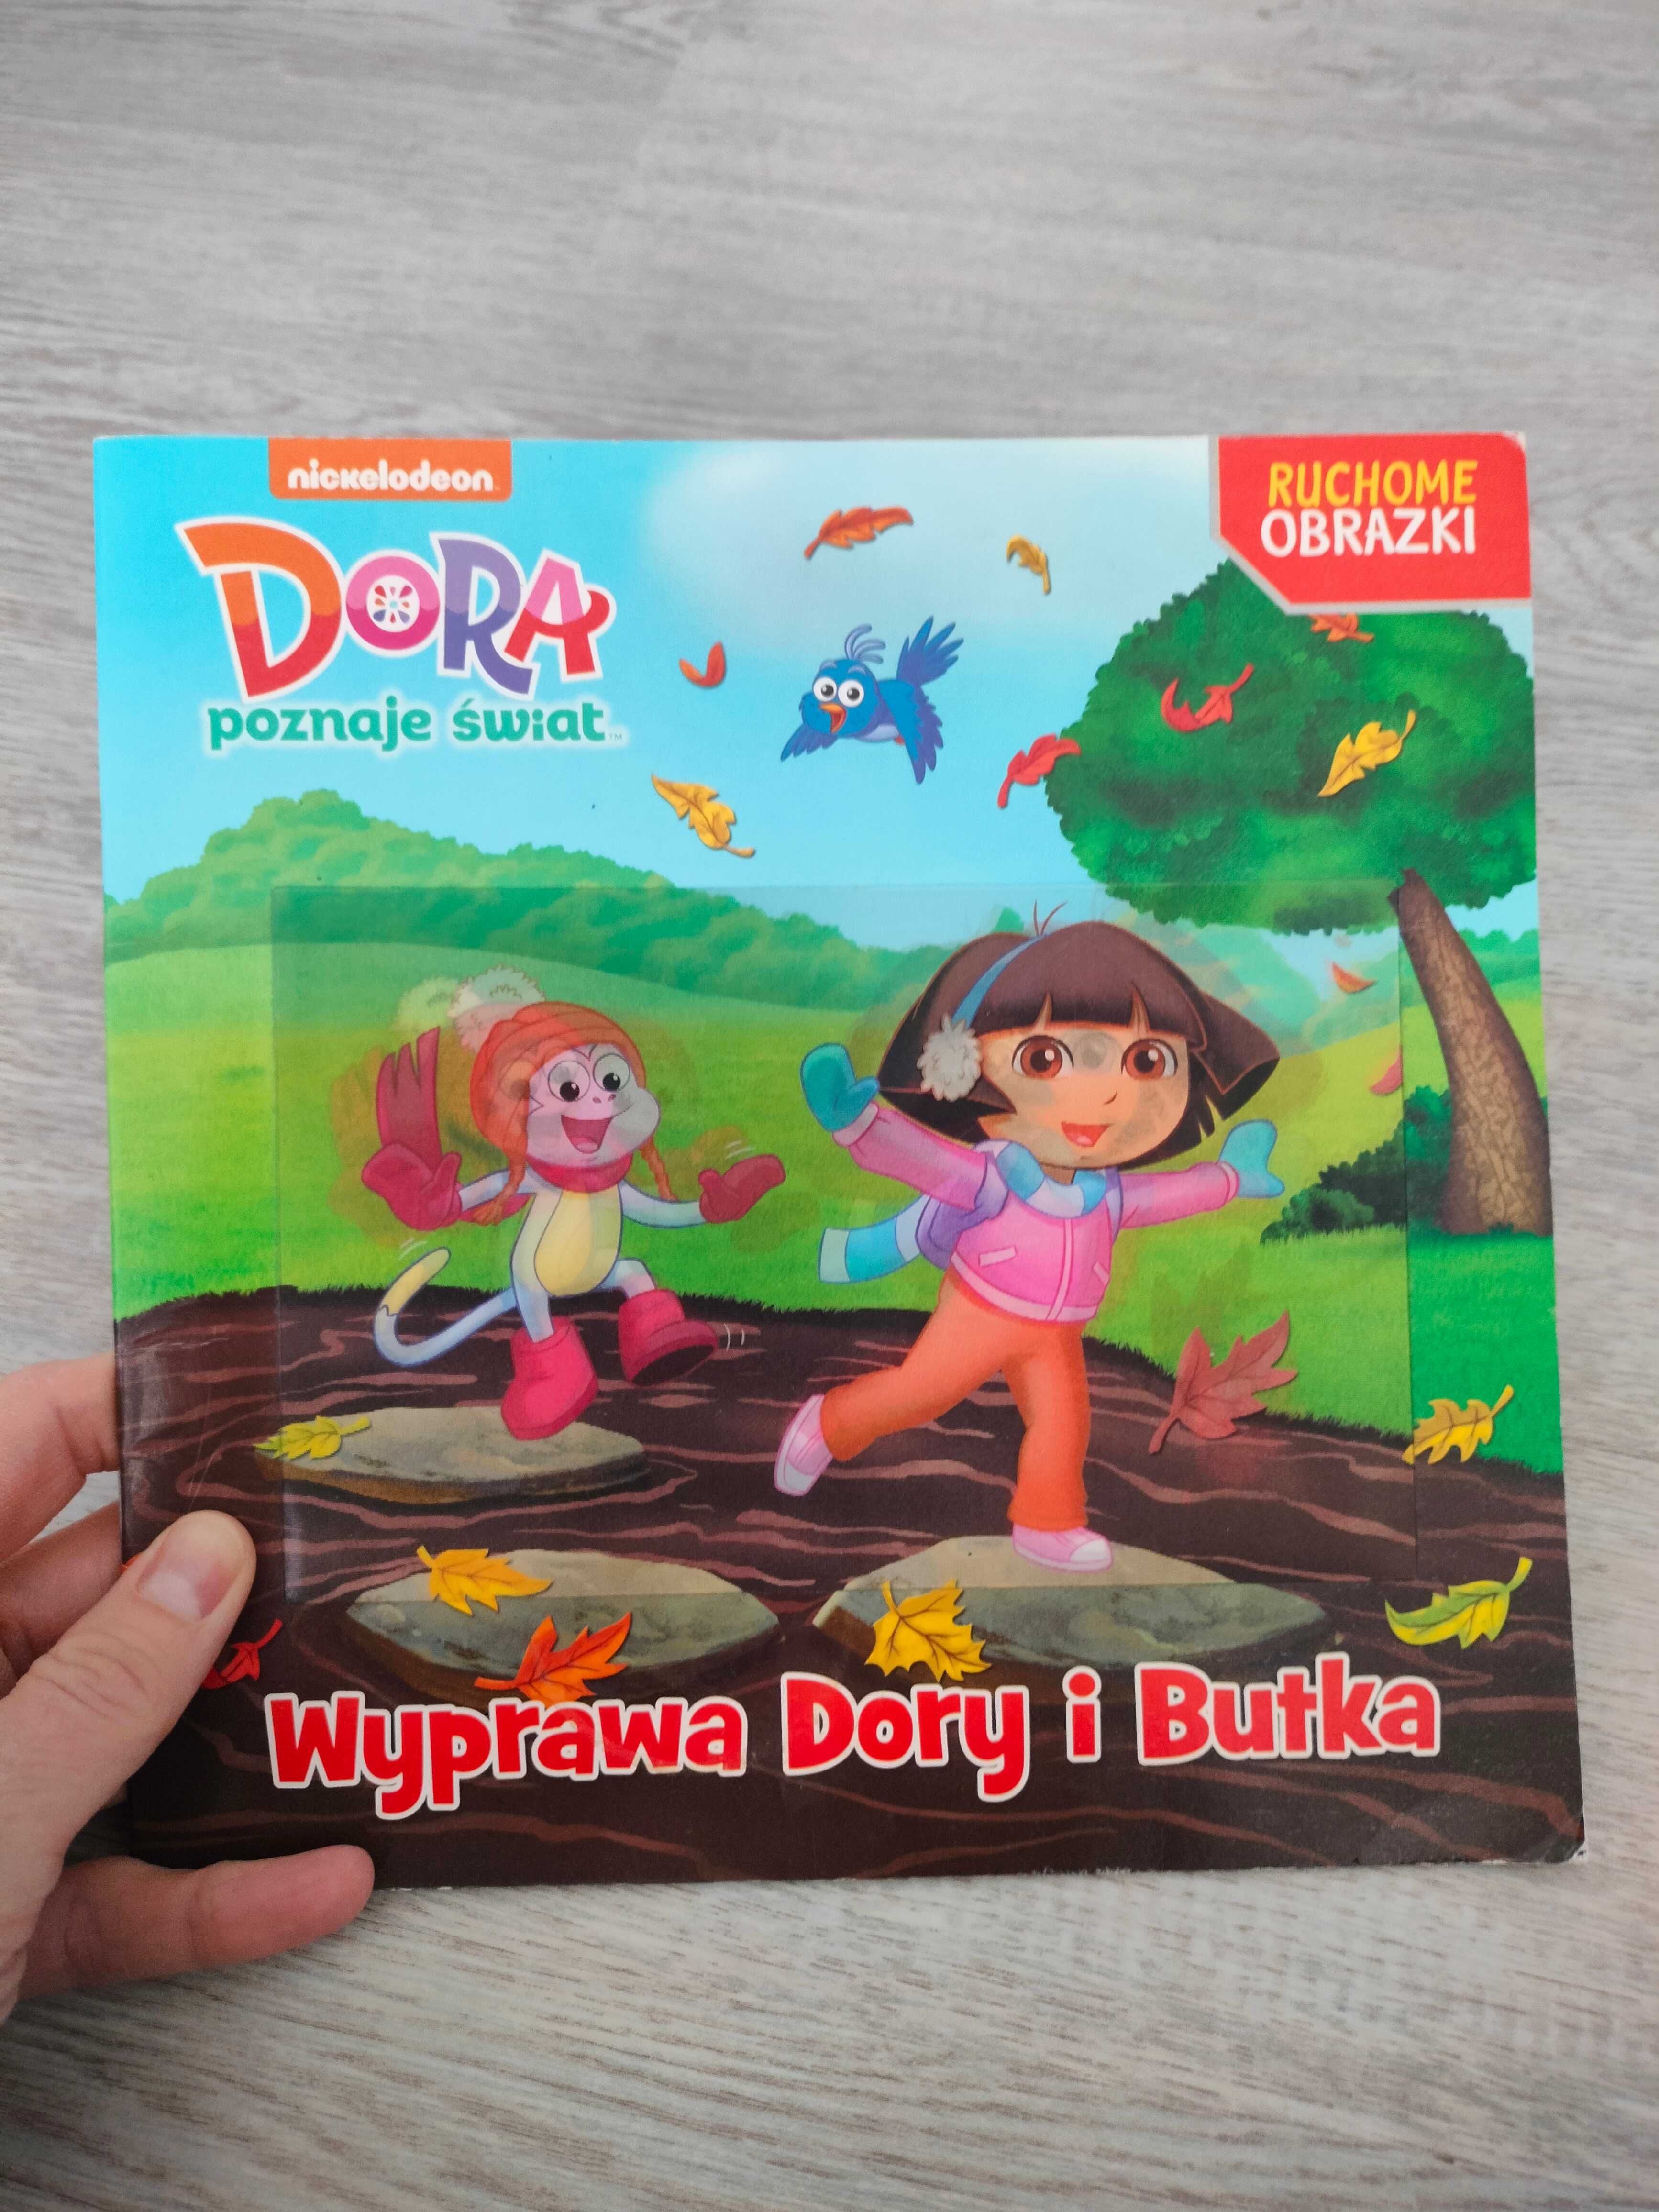 Dora poznaje świat: Wyprawa Dory i Butka, Nickelodeon, trójwymiarowa